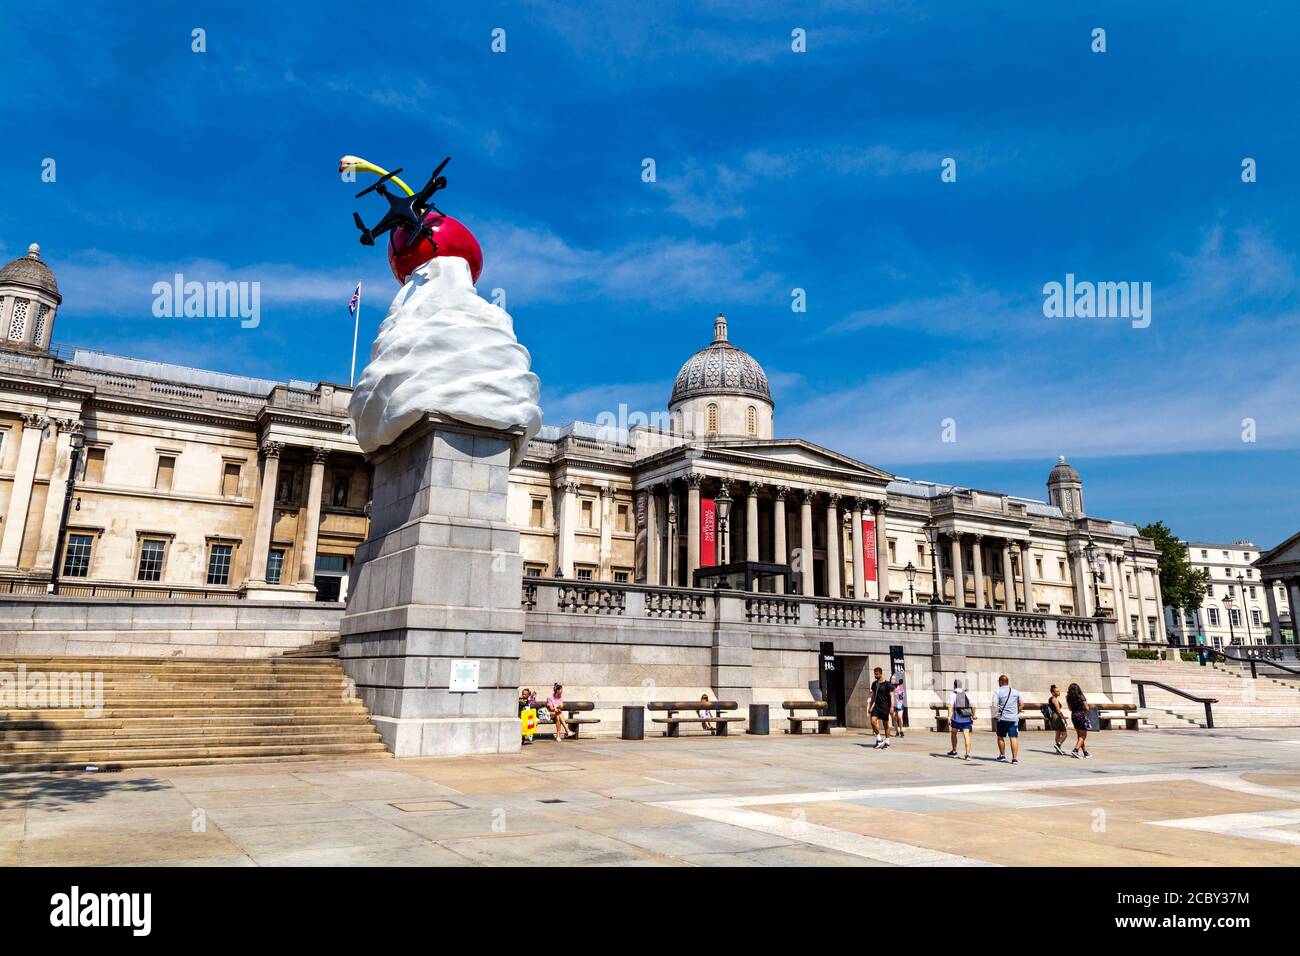 Trafalgar Square vierte Sockelskulptur "The End" der Künstlerin Heather Phillipson, die einen Wirbel aus Eis, Kirsche, Drohne und Fliege zeigt, London, Großbritannien Stockfoto